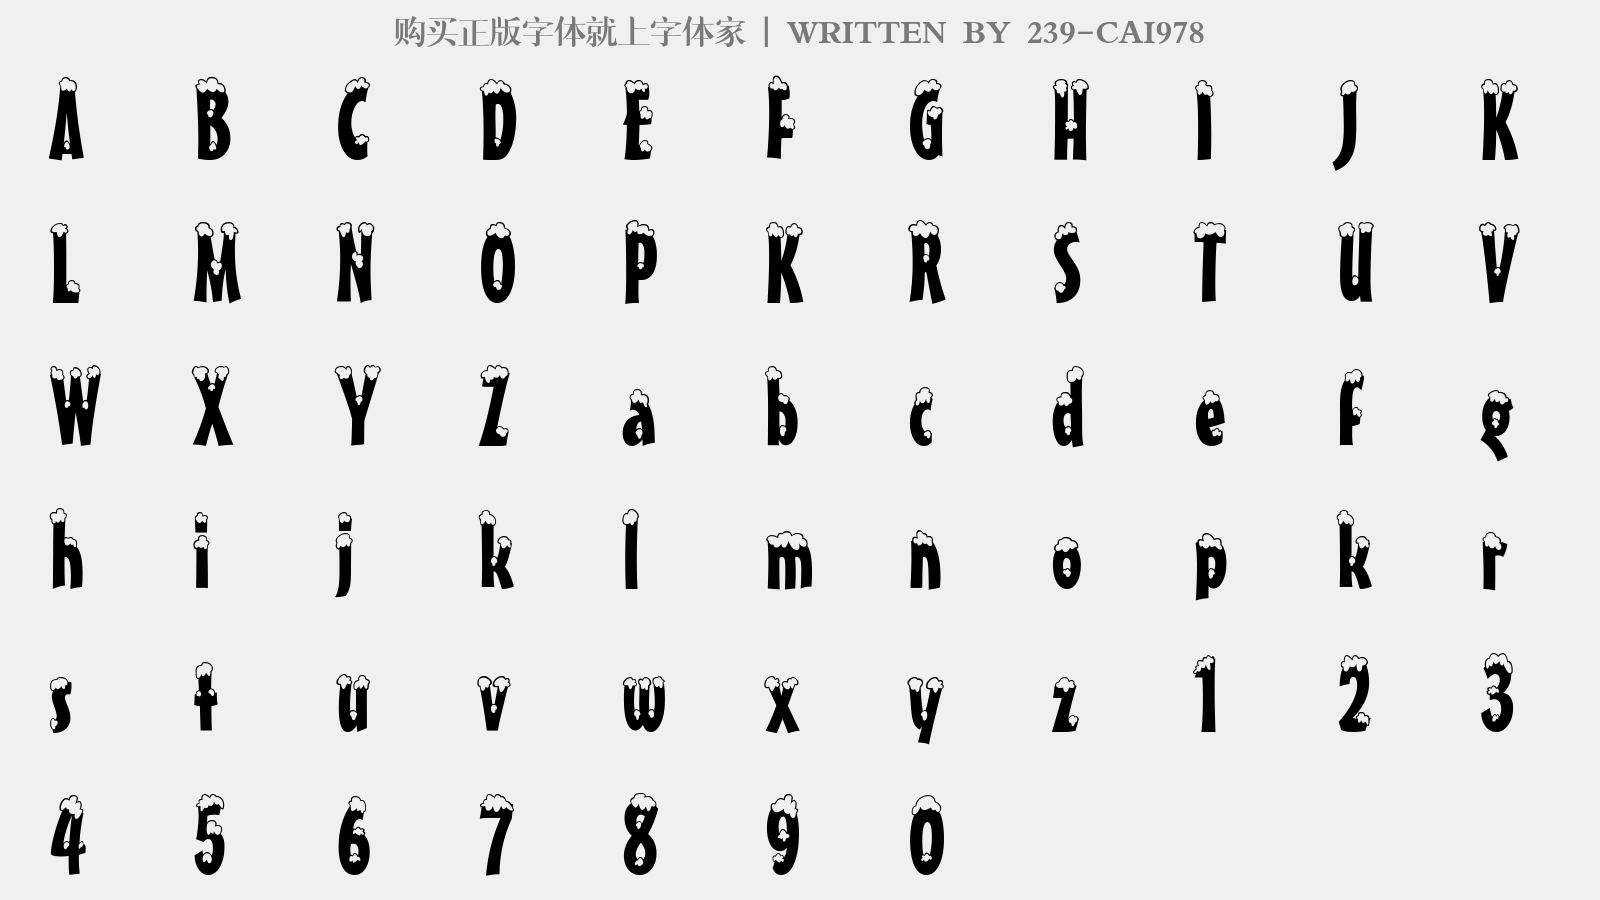 240-CAI978 - 大写字母/小写字母/数字